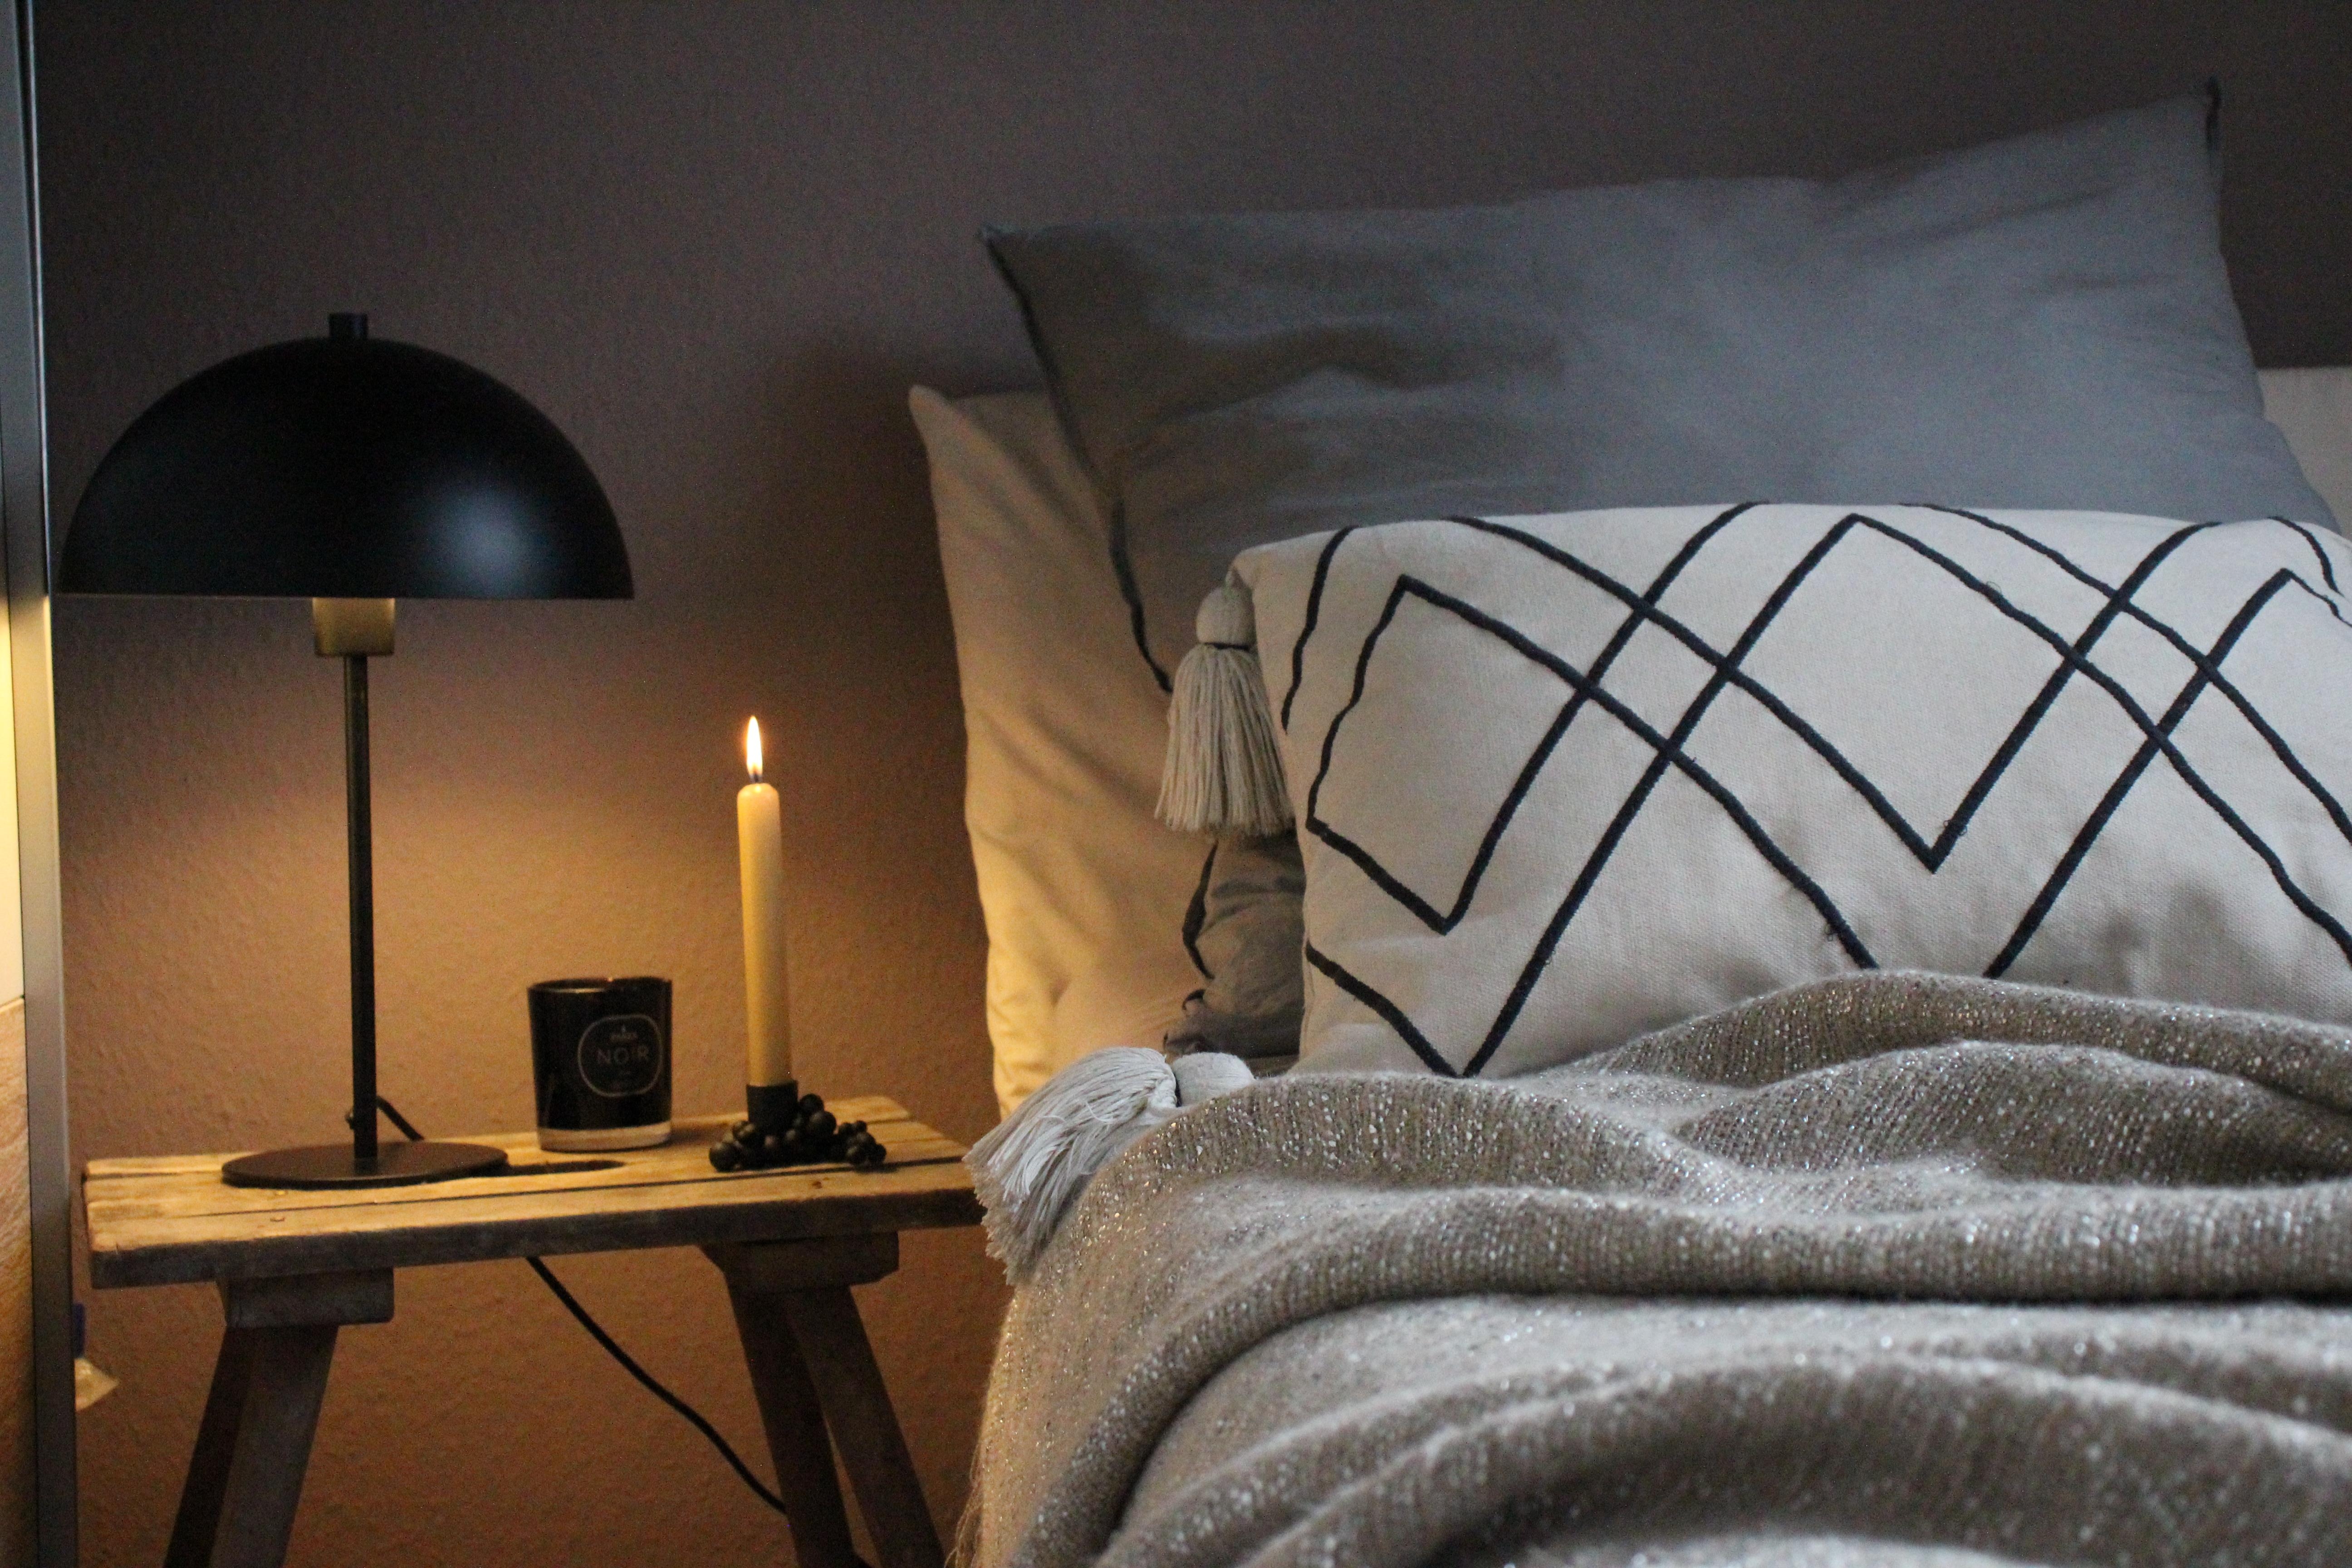 Der Sonntag wird hier ganz entspannt genossen #bedroom #schlafzimmer #diy #cozy #kerzenschein #kerzen